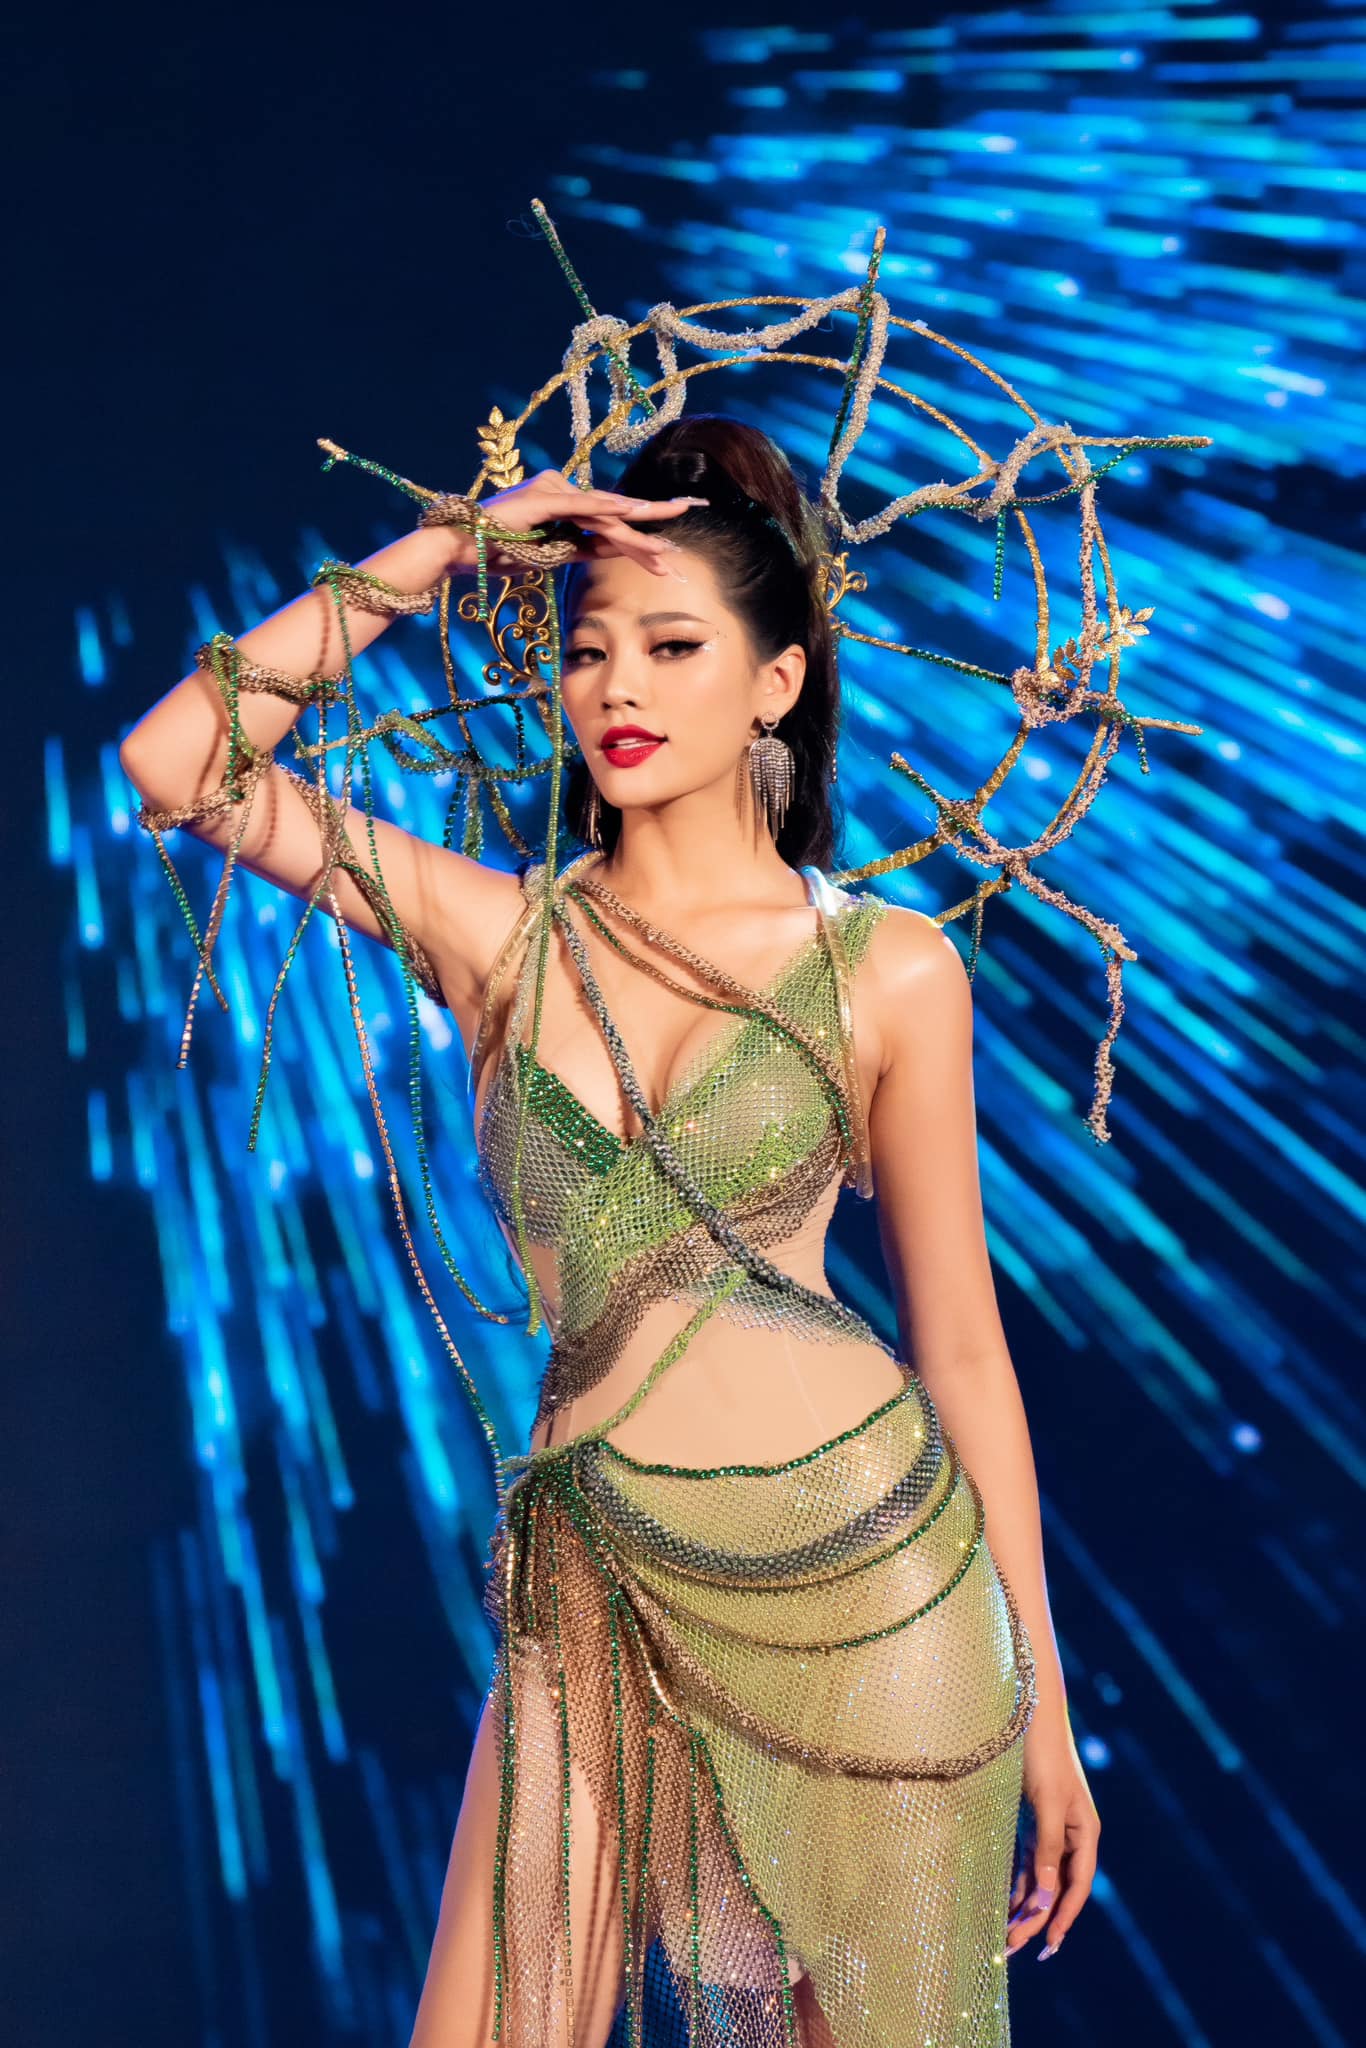 Tuần lễ thời trang xuân hè LOOK 2023 đã chính thức khai mạc với sự góp mặt của 5 NTK, hoa hậu Đinh Như Phương làm vedette kết show trong BST Ngọc Thực của NTK Phạm Gia Hưng.